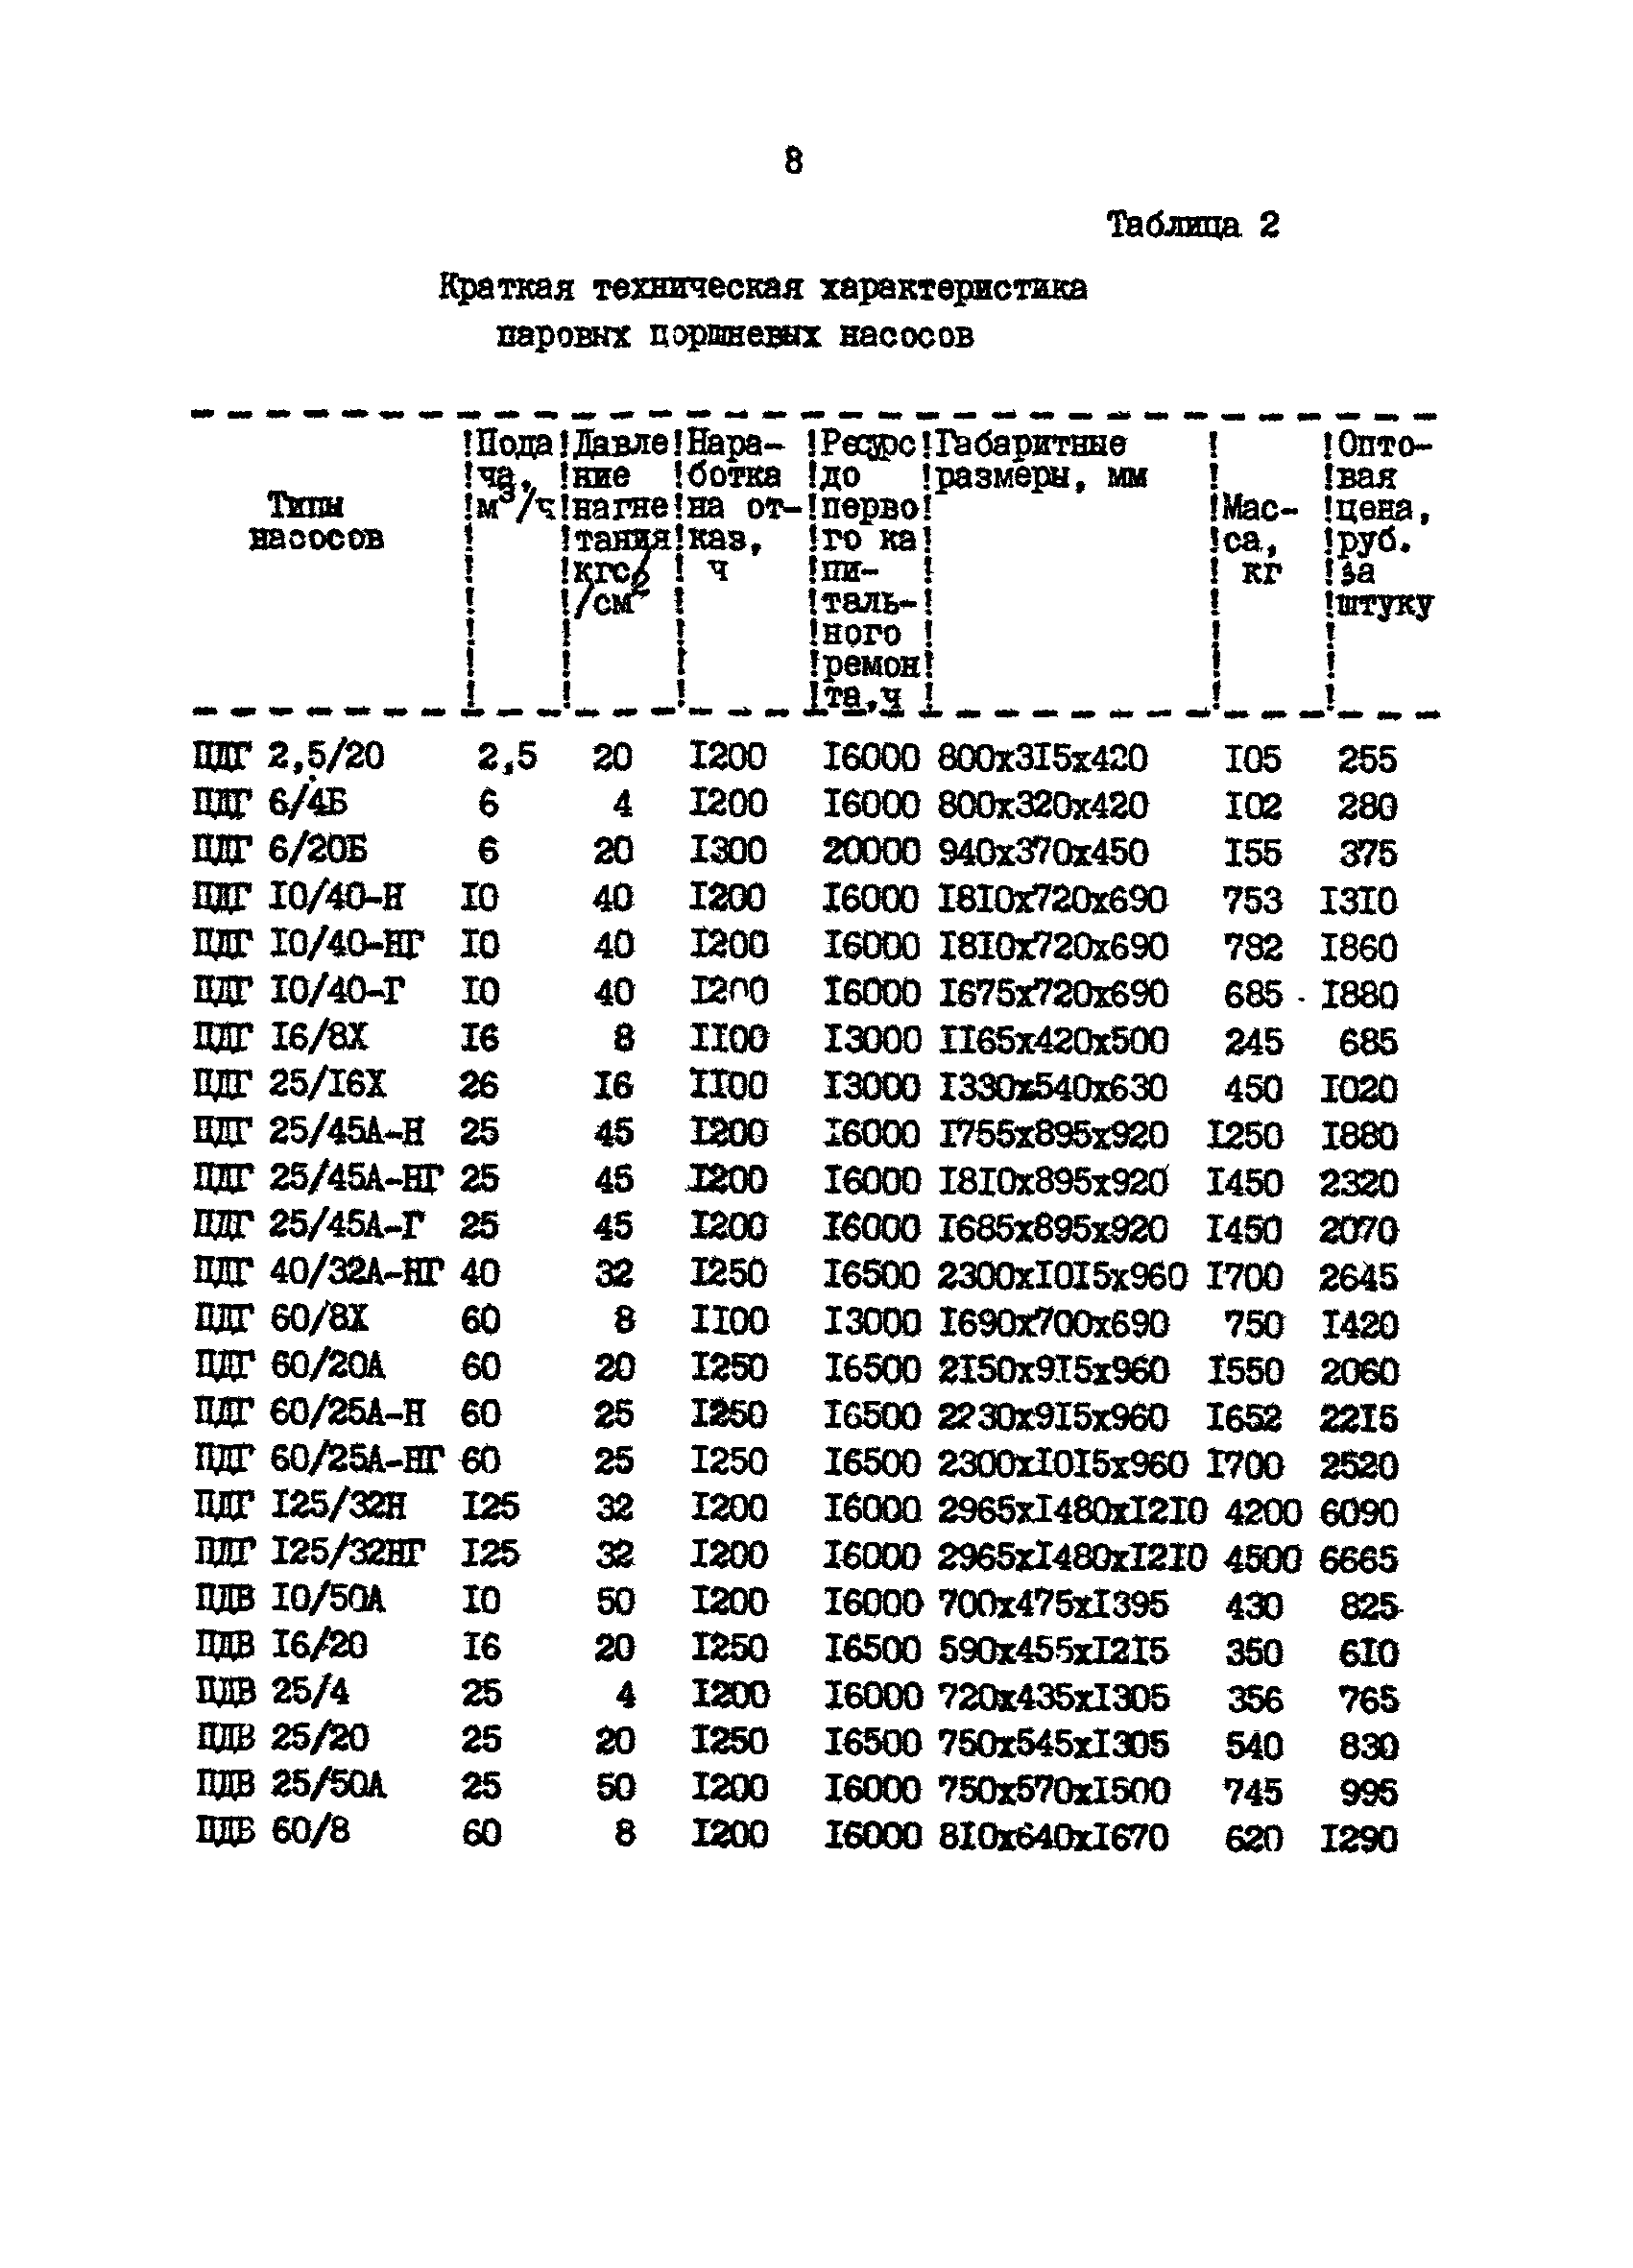 РД 39-30-629-81